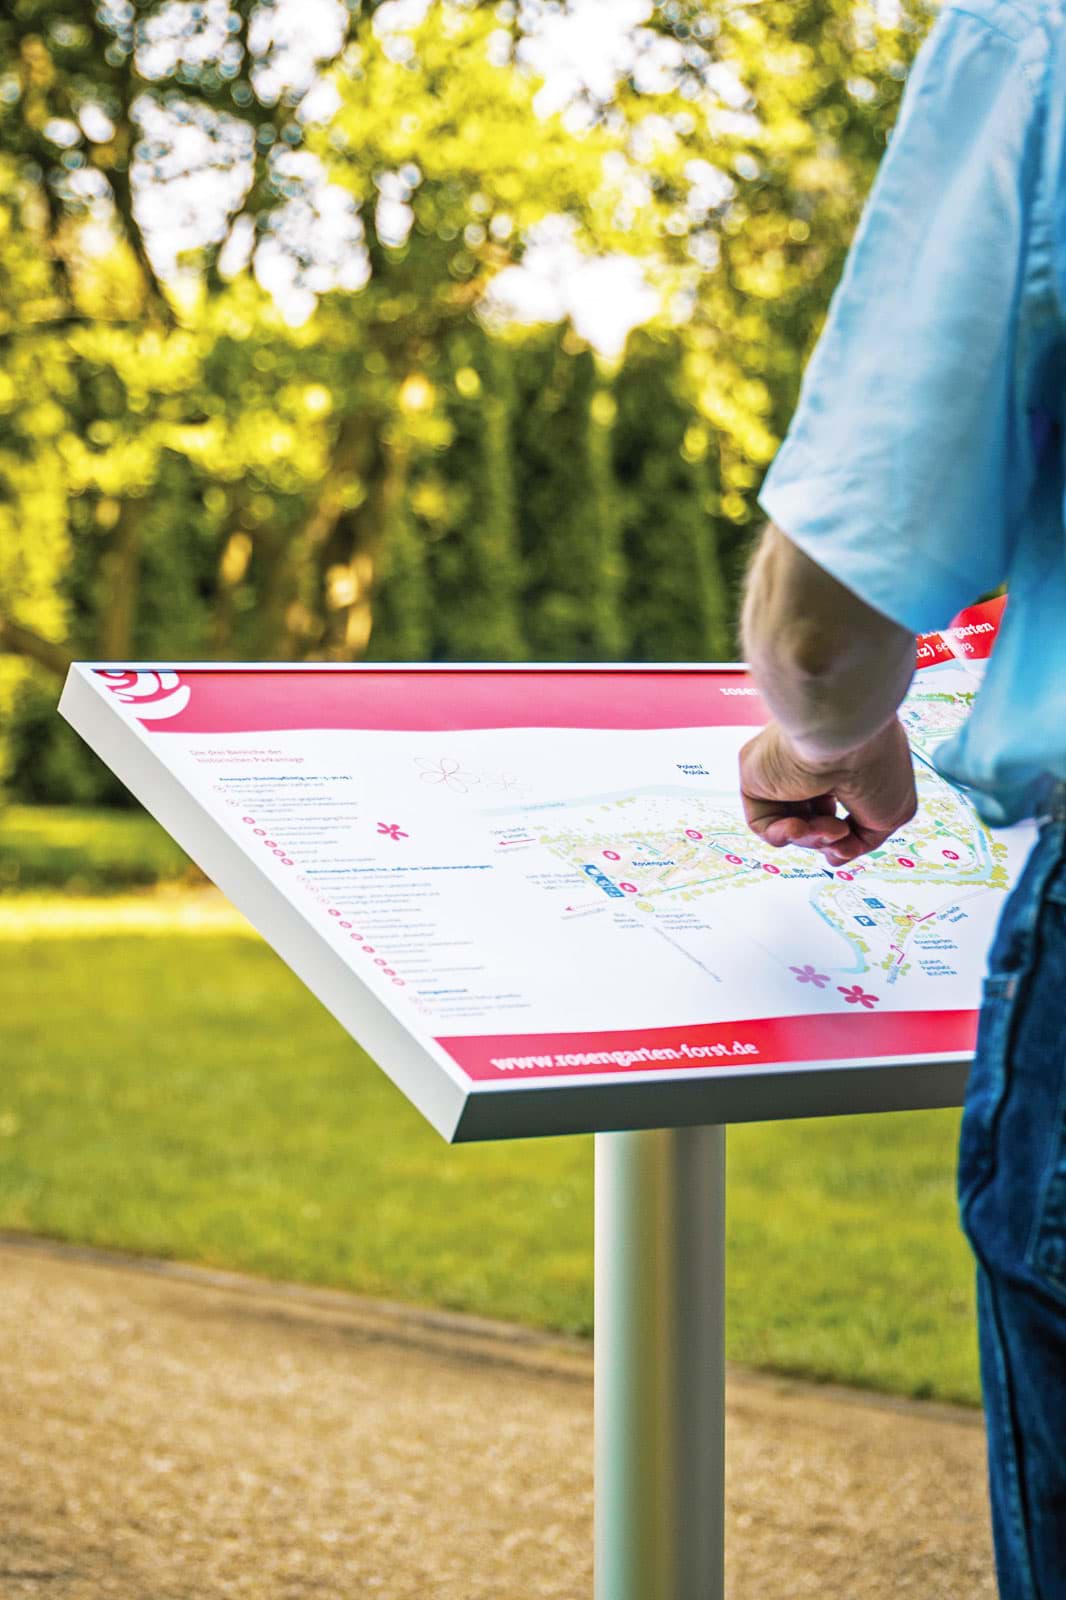 Pultform-Infotafel als Lageplan für Übersichtskarten im Park oder bei einer Landschaftsschau